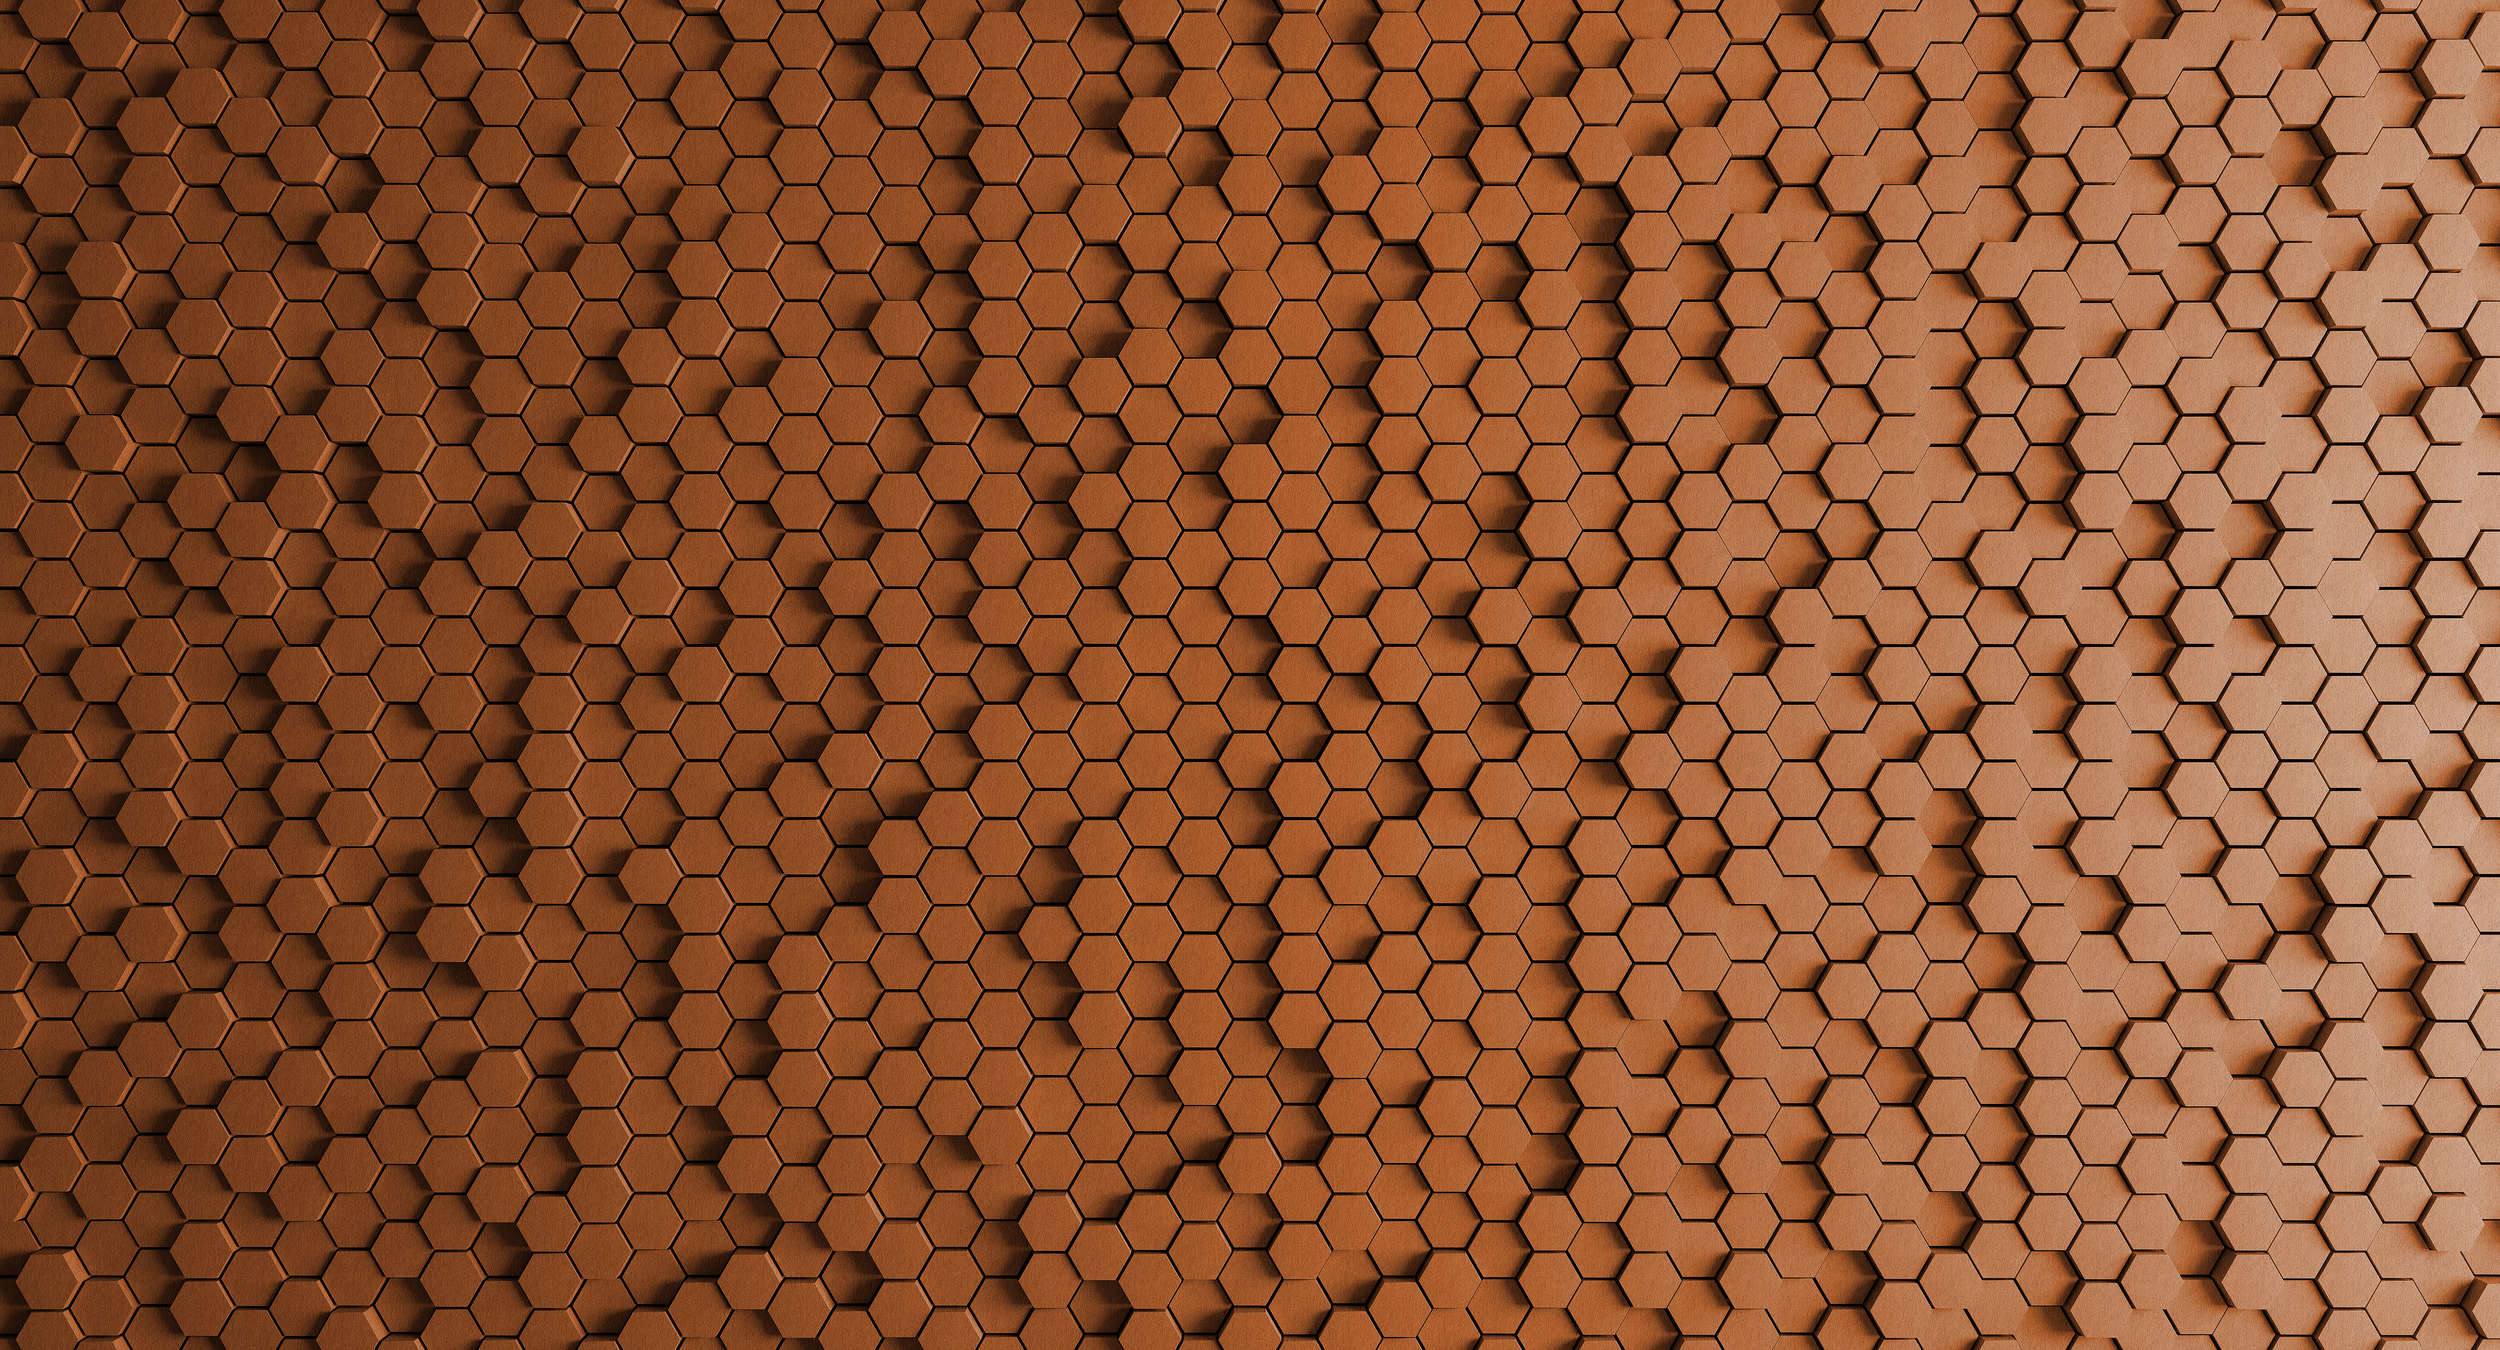             Honeycomb 2 - Papier peint 3D nid d'abeille orange - texture feutre - cuivre, orange | nacré intissé lisse
        